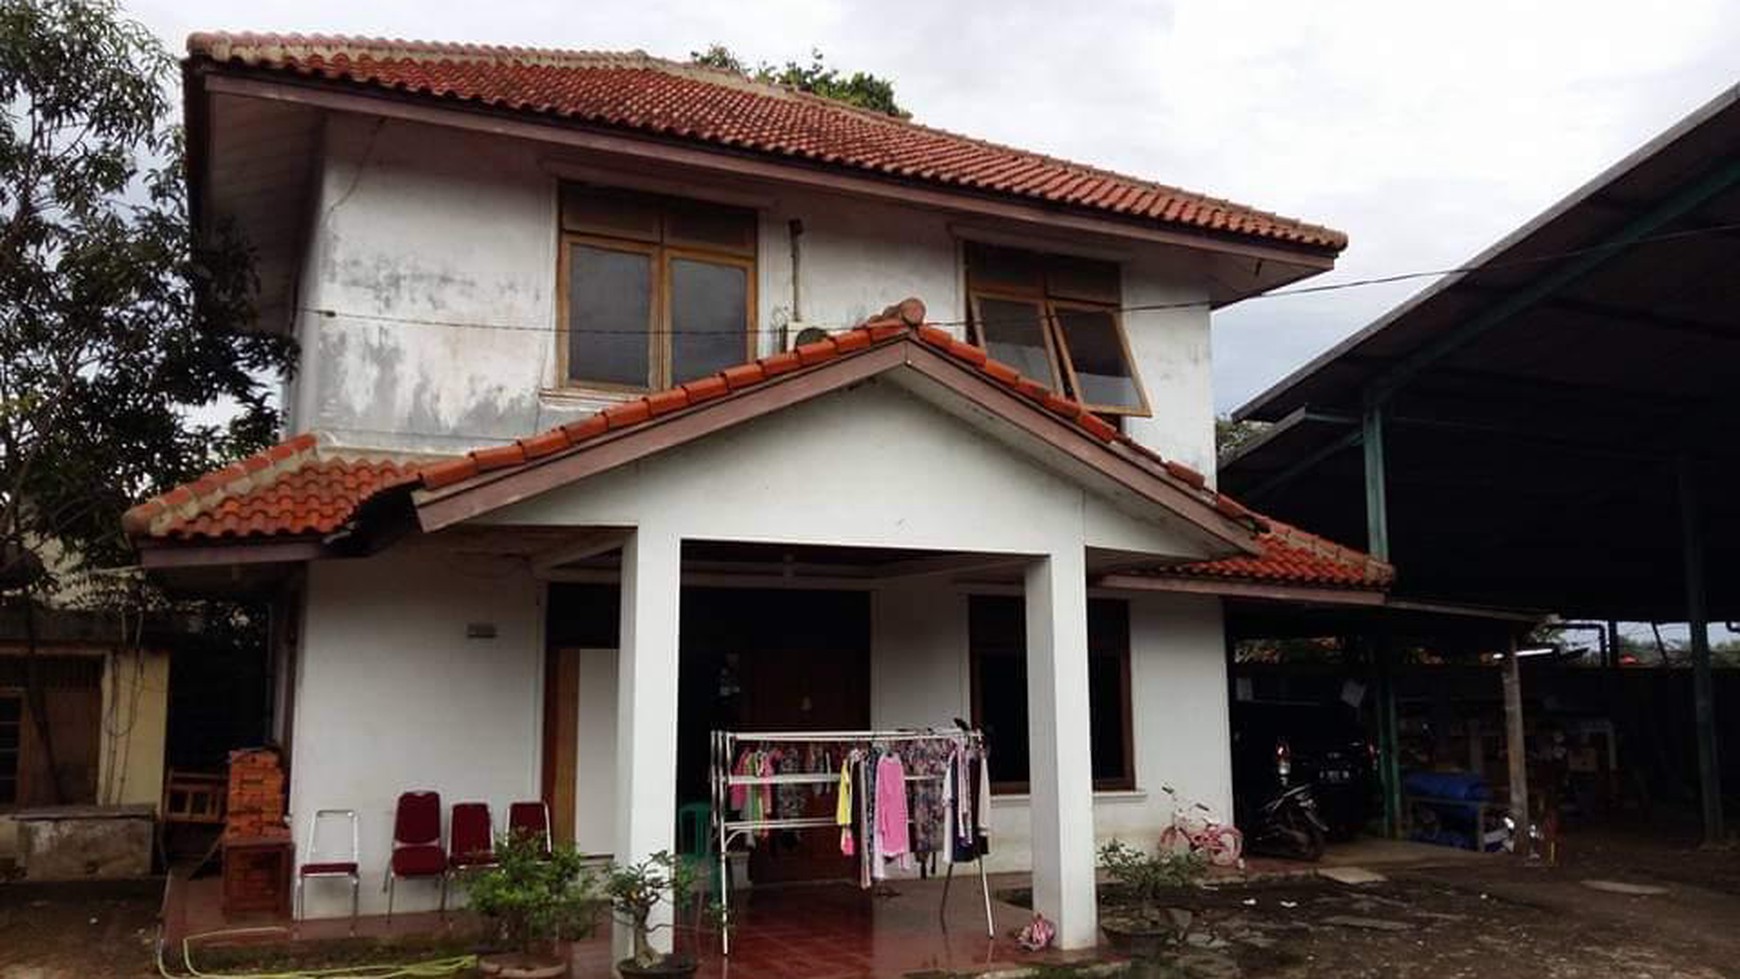 Dijual Gudang dan Rumah di daerah Parung Bogor Jawa Barat